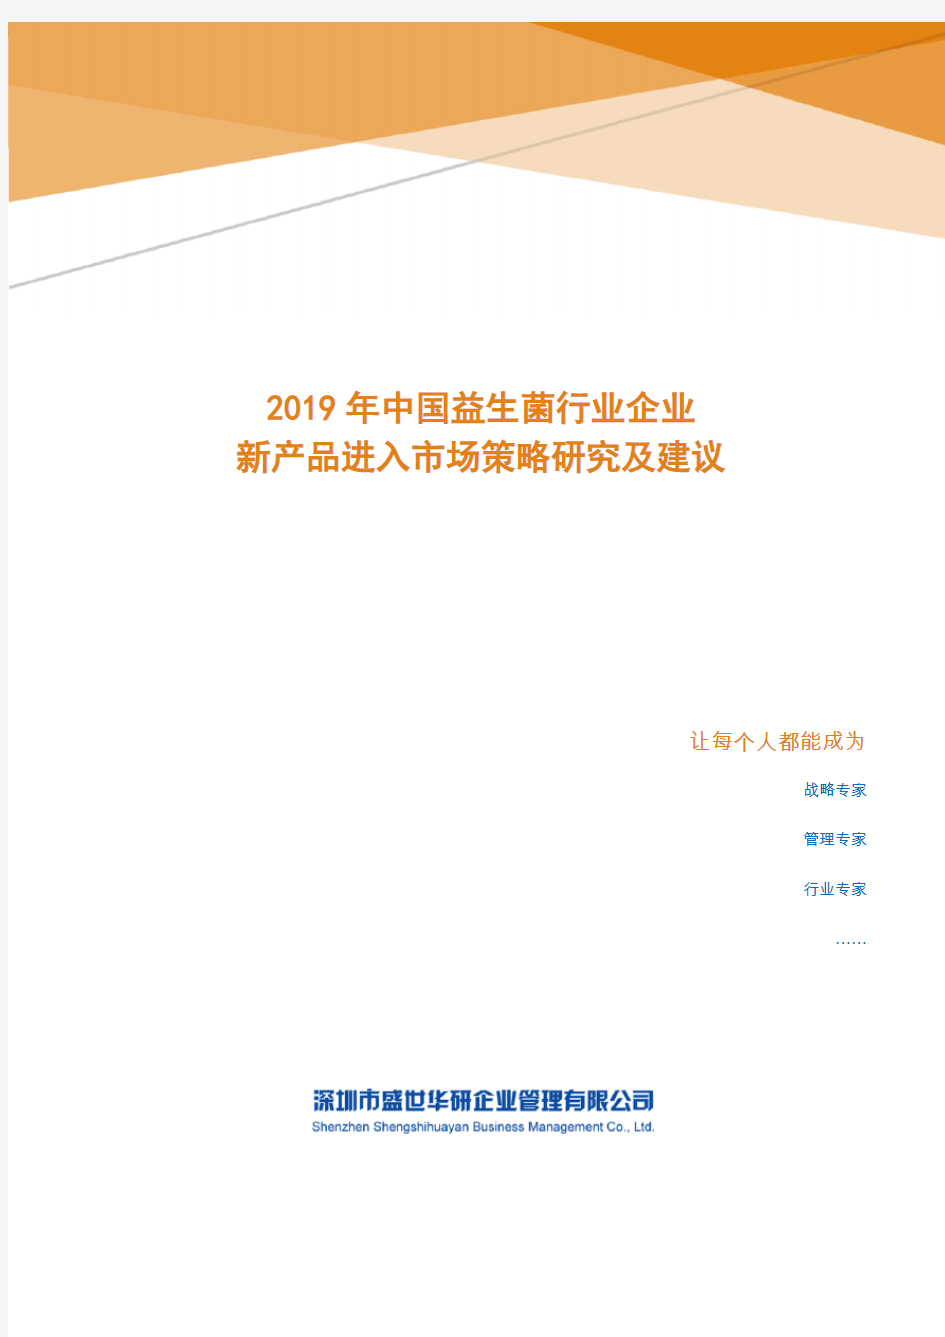 2019年中国益生菌行业新产品进入市场策略研究及建议